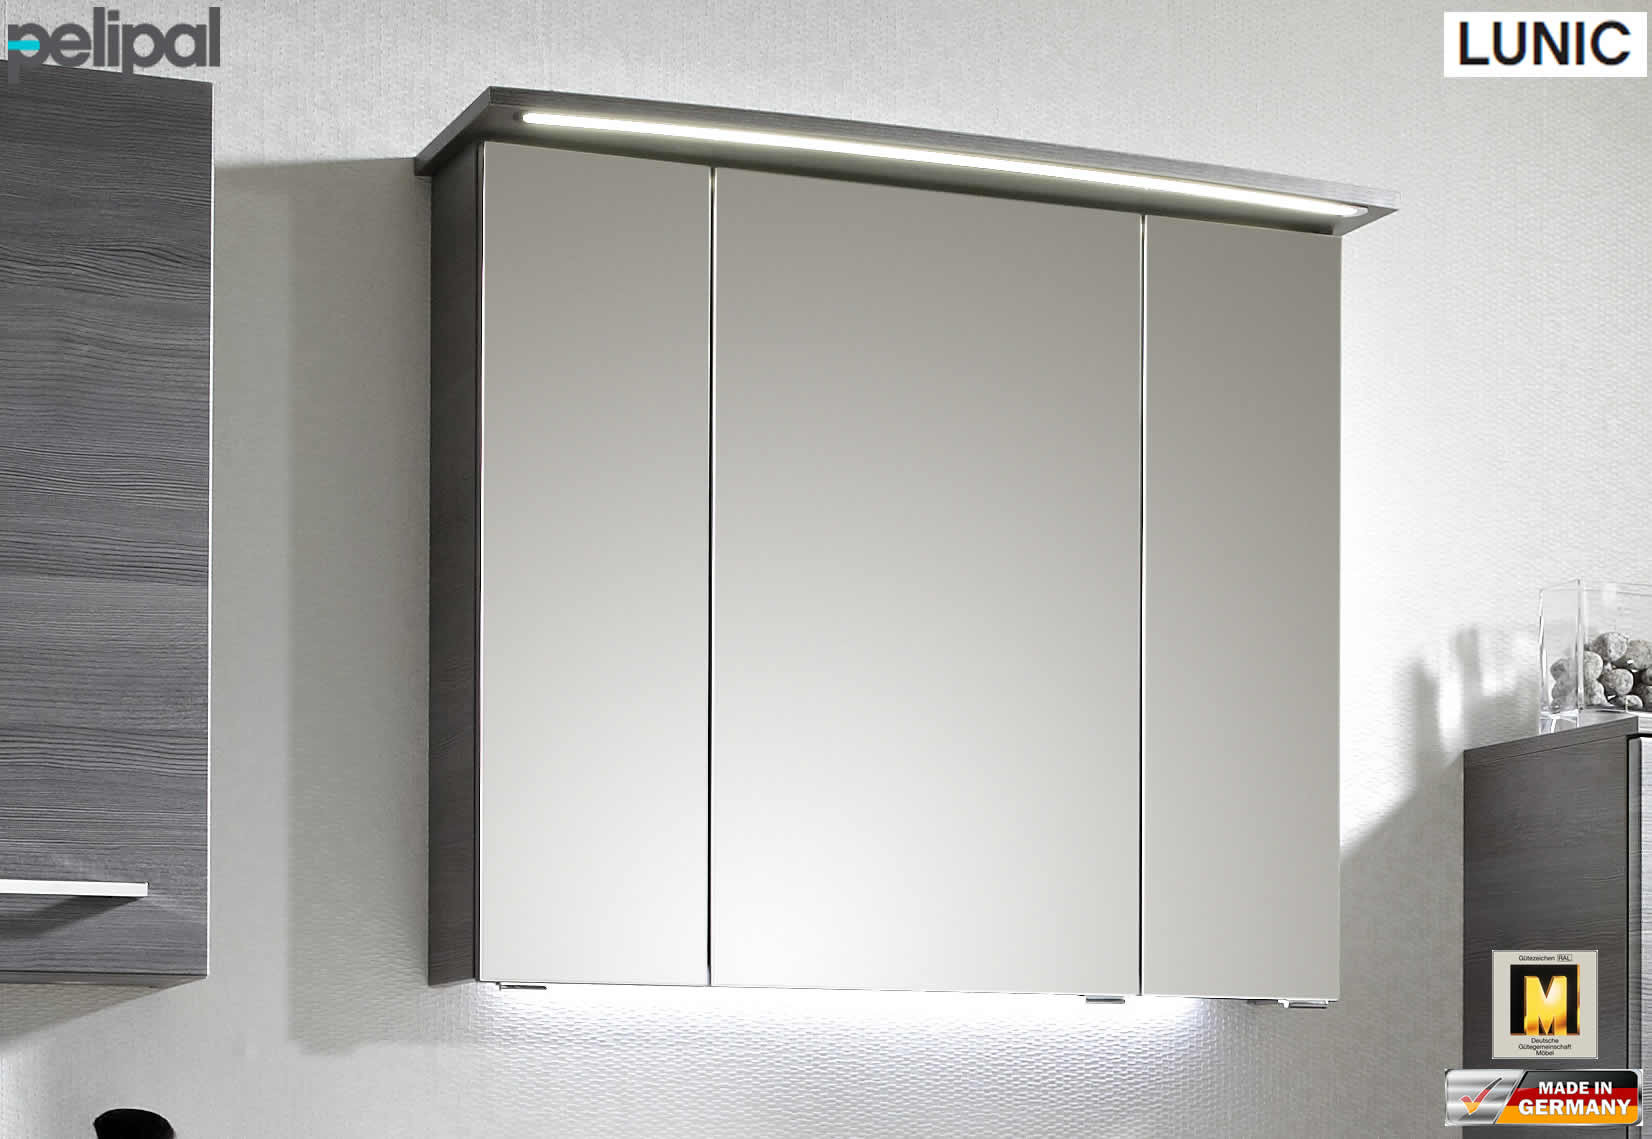 Spiegelschrank 80 Cm
 Pelipal Lunic Spiegelschrank 80 cm Breite mit LED im Kranz